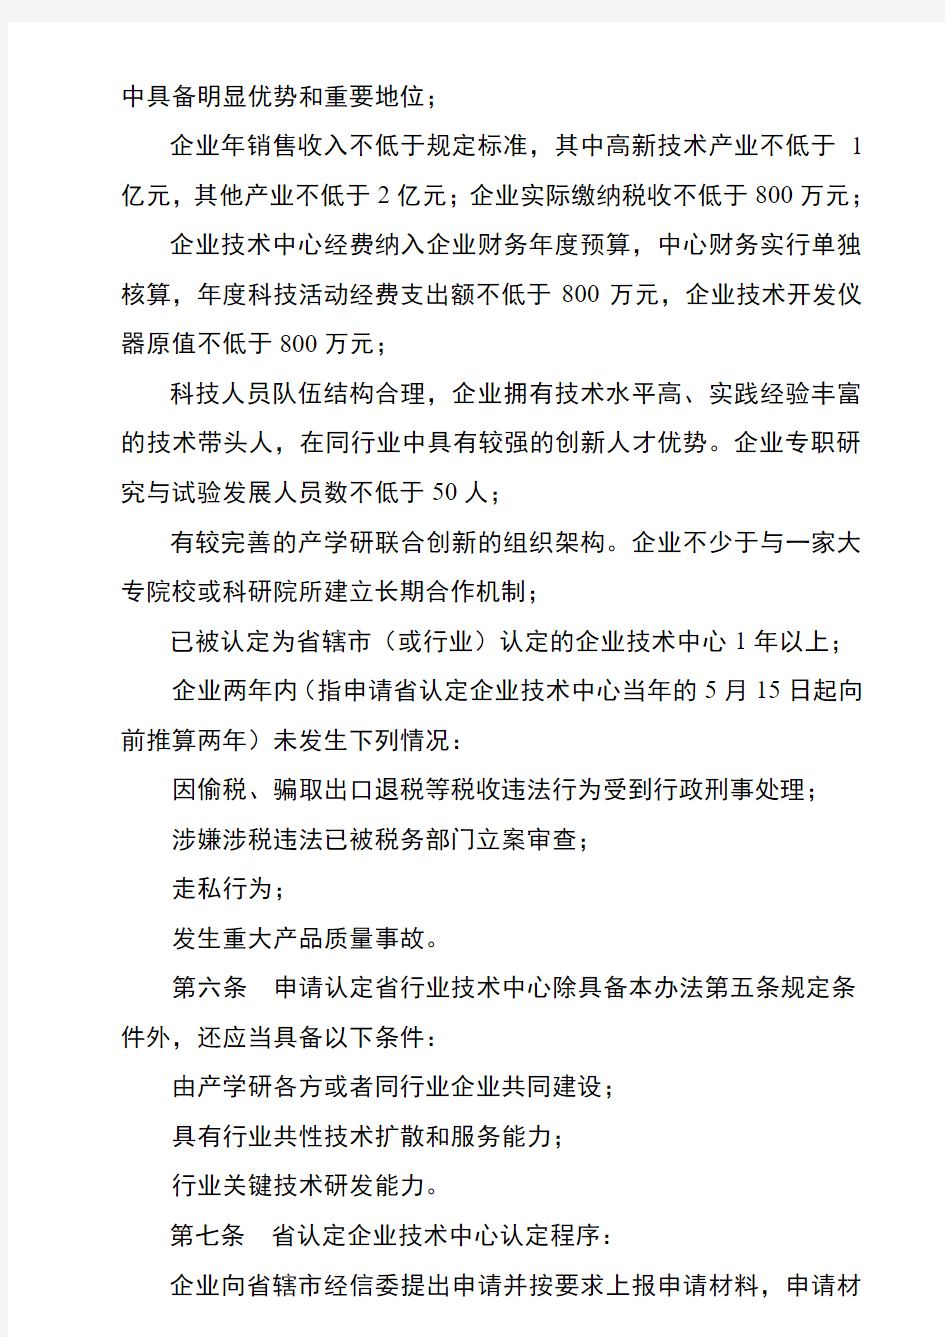 江苏省认定企业技术中心管理办法版